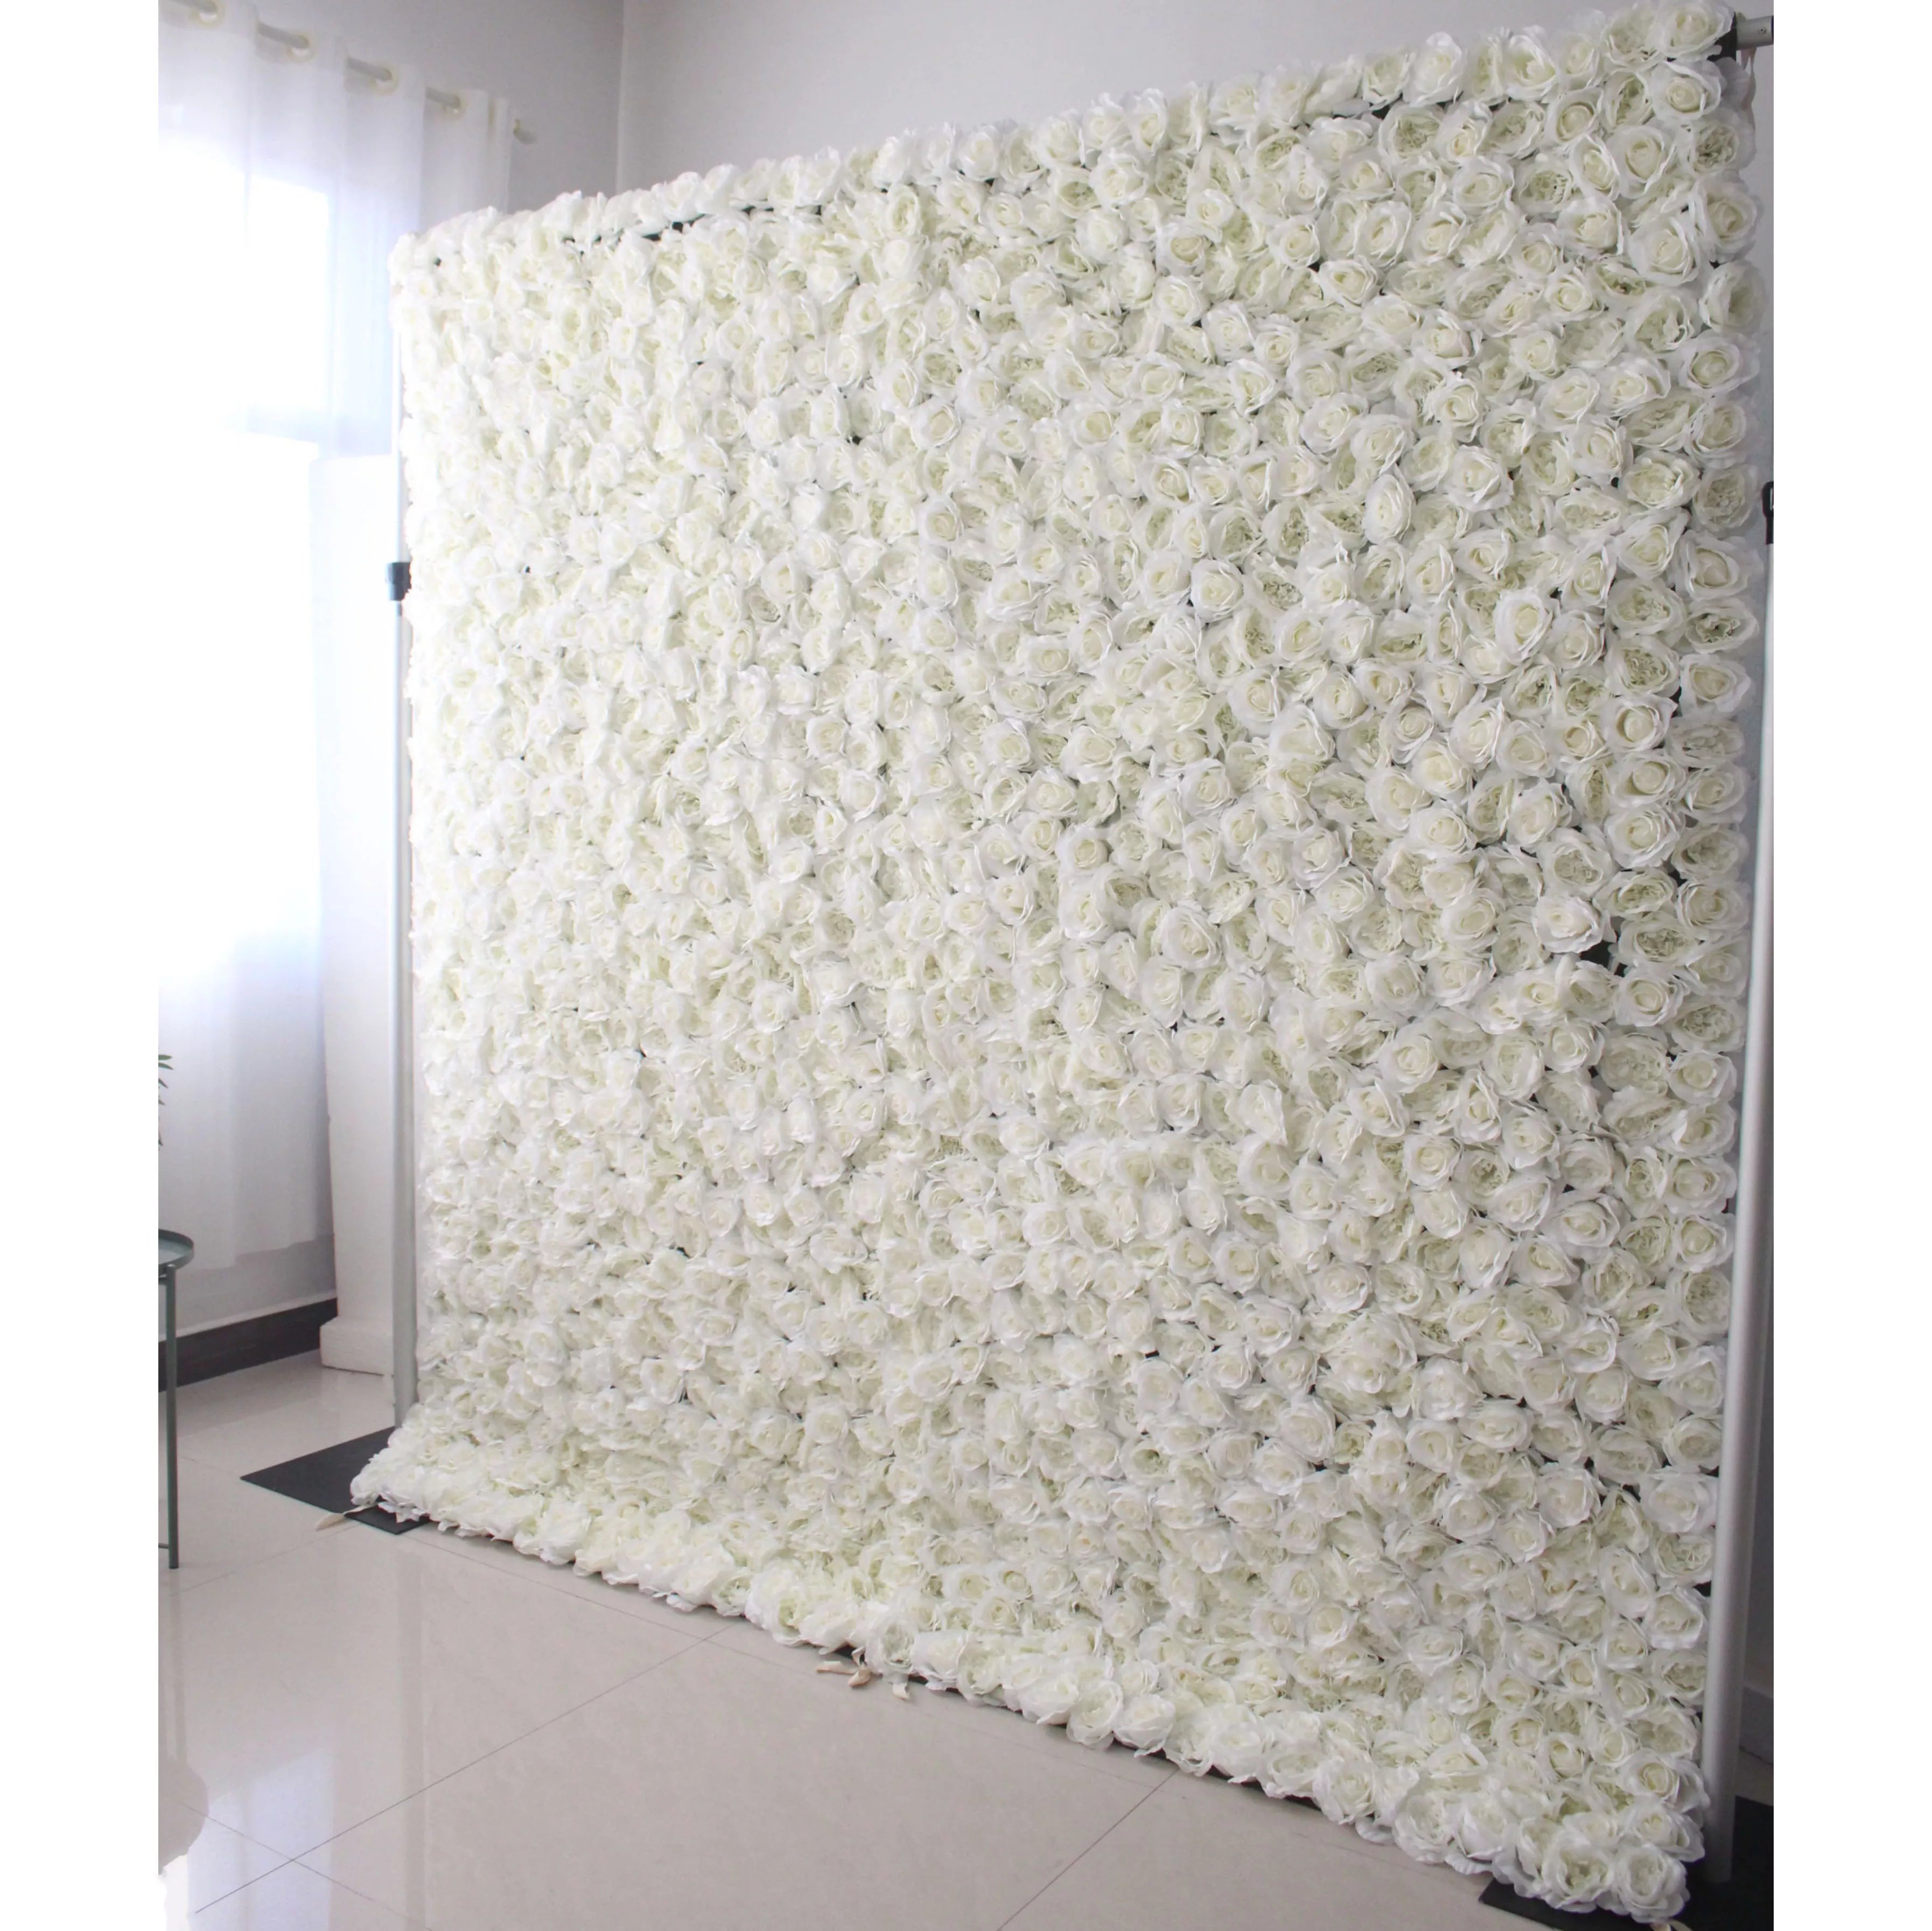 زهور فالار لفة قماش زهور اصطناعية زهور بيضاء خلفية جدار زفاف ، ديكور حفلات زهور ، حدث